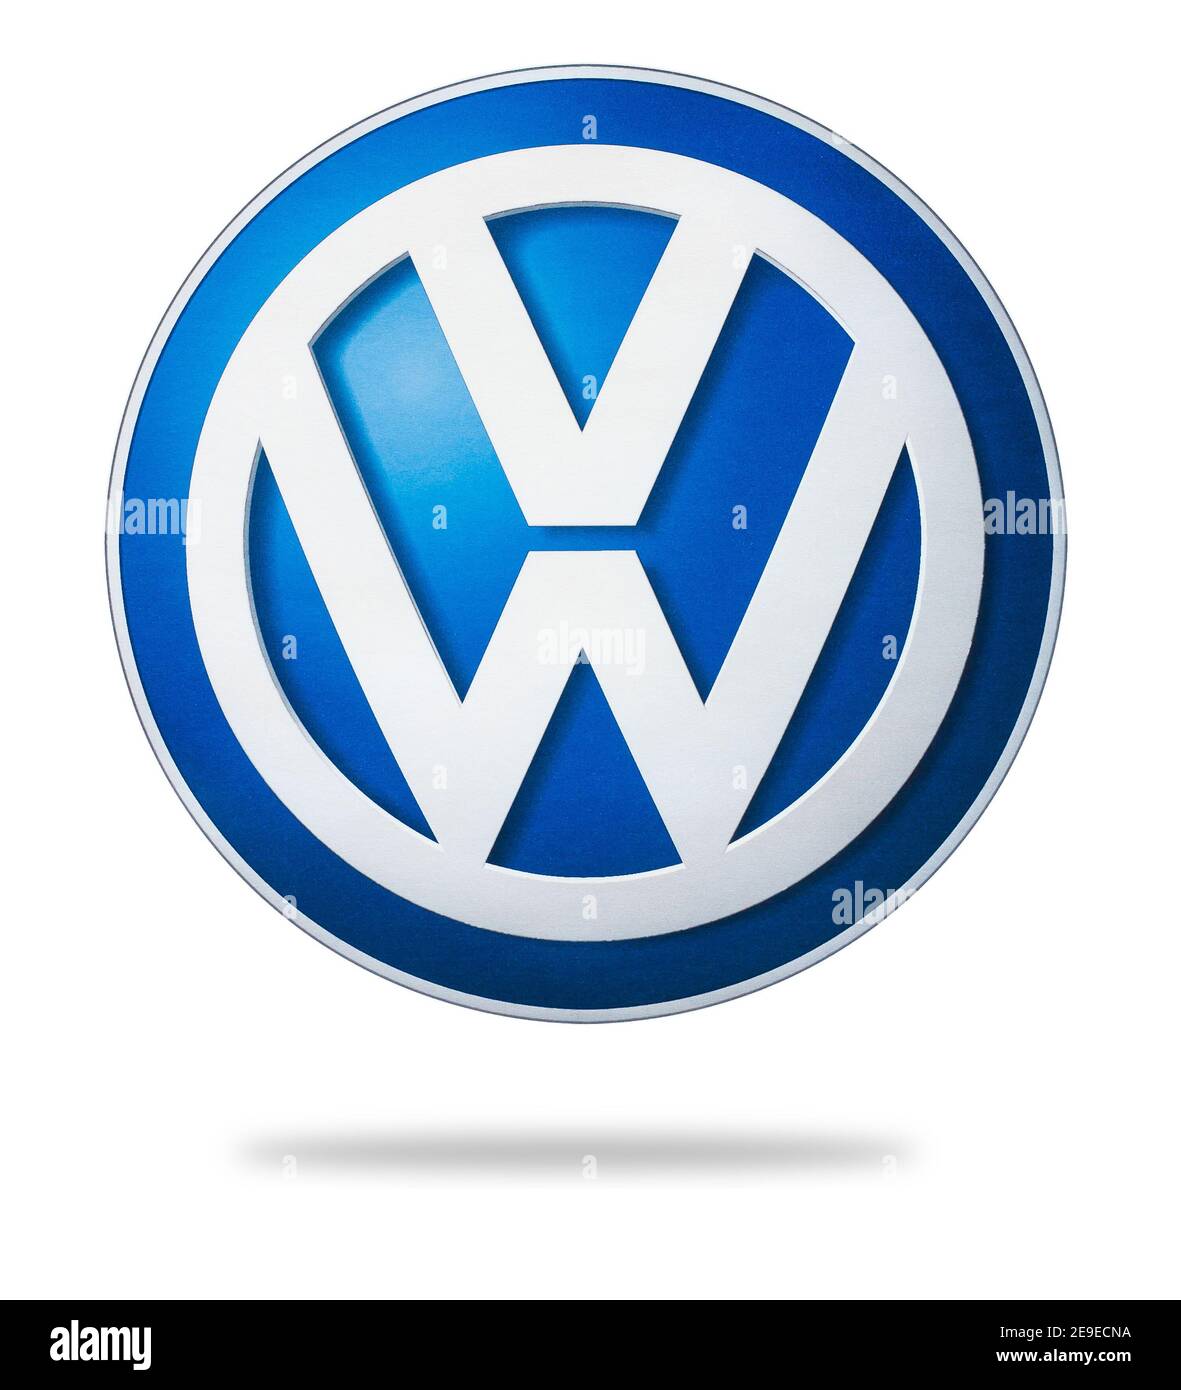 Photo du logo Volkswagen imprimée sur papier. Volkswagen est un constructeur automobile allemand dont le siège est situé à Wolfsburg Banque D'Images